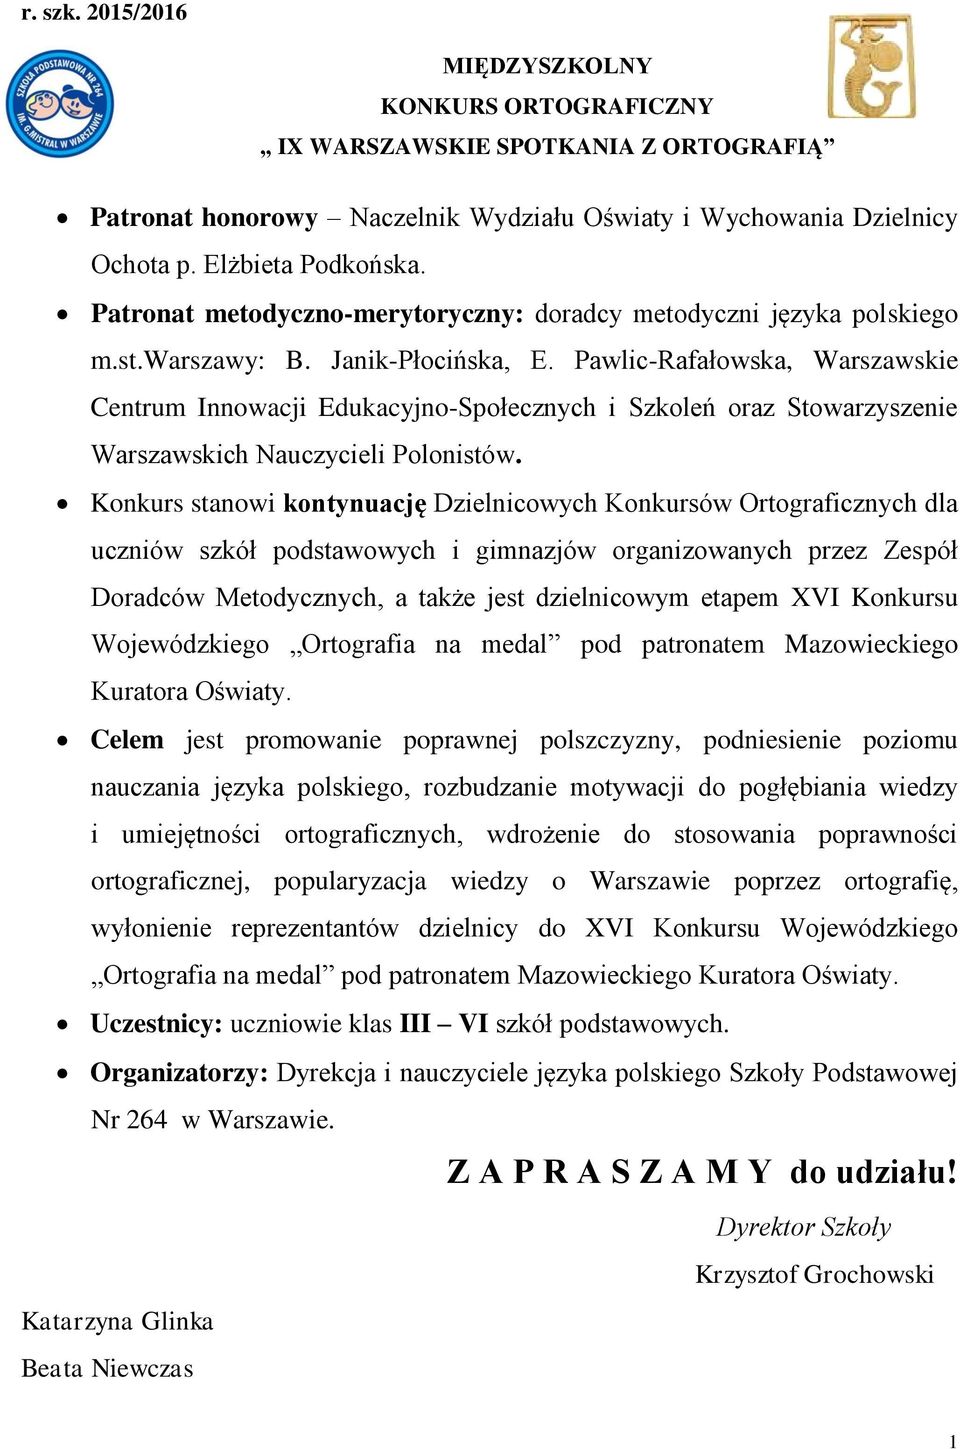 Pawlic-Rafałowska, Warszawskie Centrum Innowacji Edukacyjno-Społecznych i Szkoleń oraz Stowarzyszenie Warszawskich Nauczycieli Polonistów.